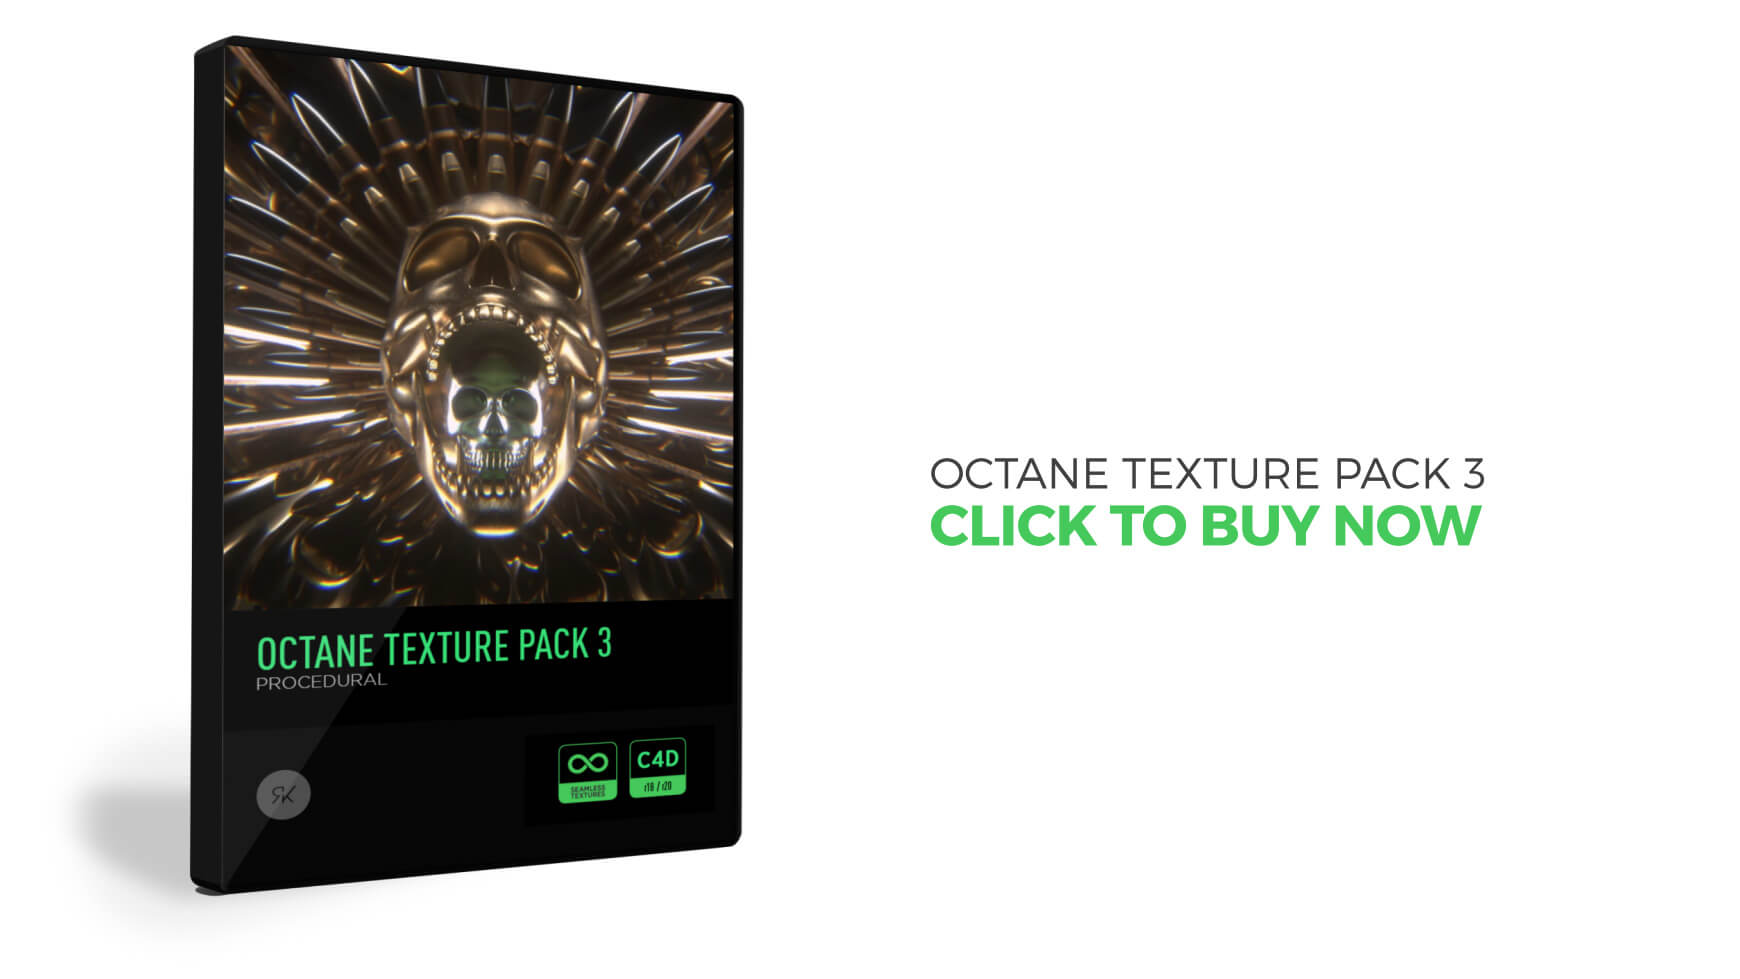 Octane Texture Pack 3 Cinema 4D Materials